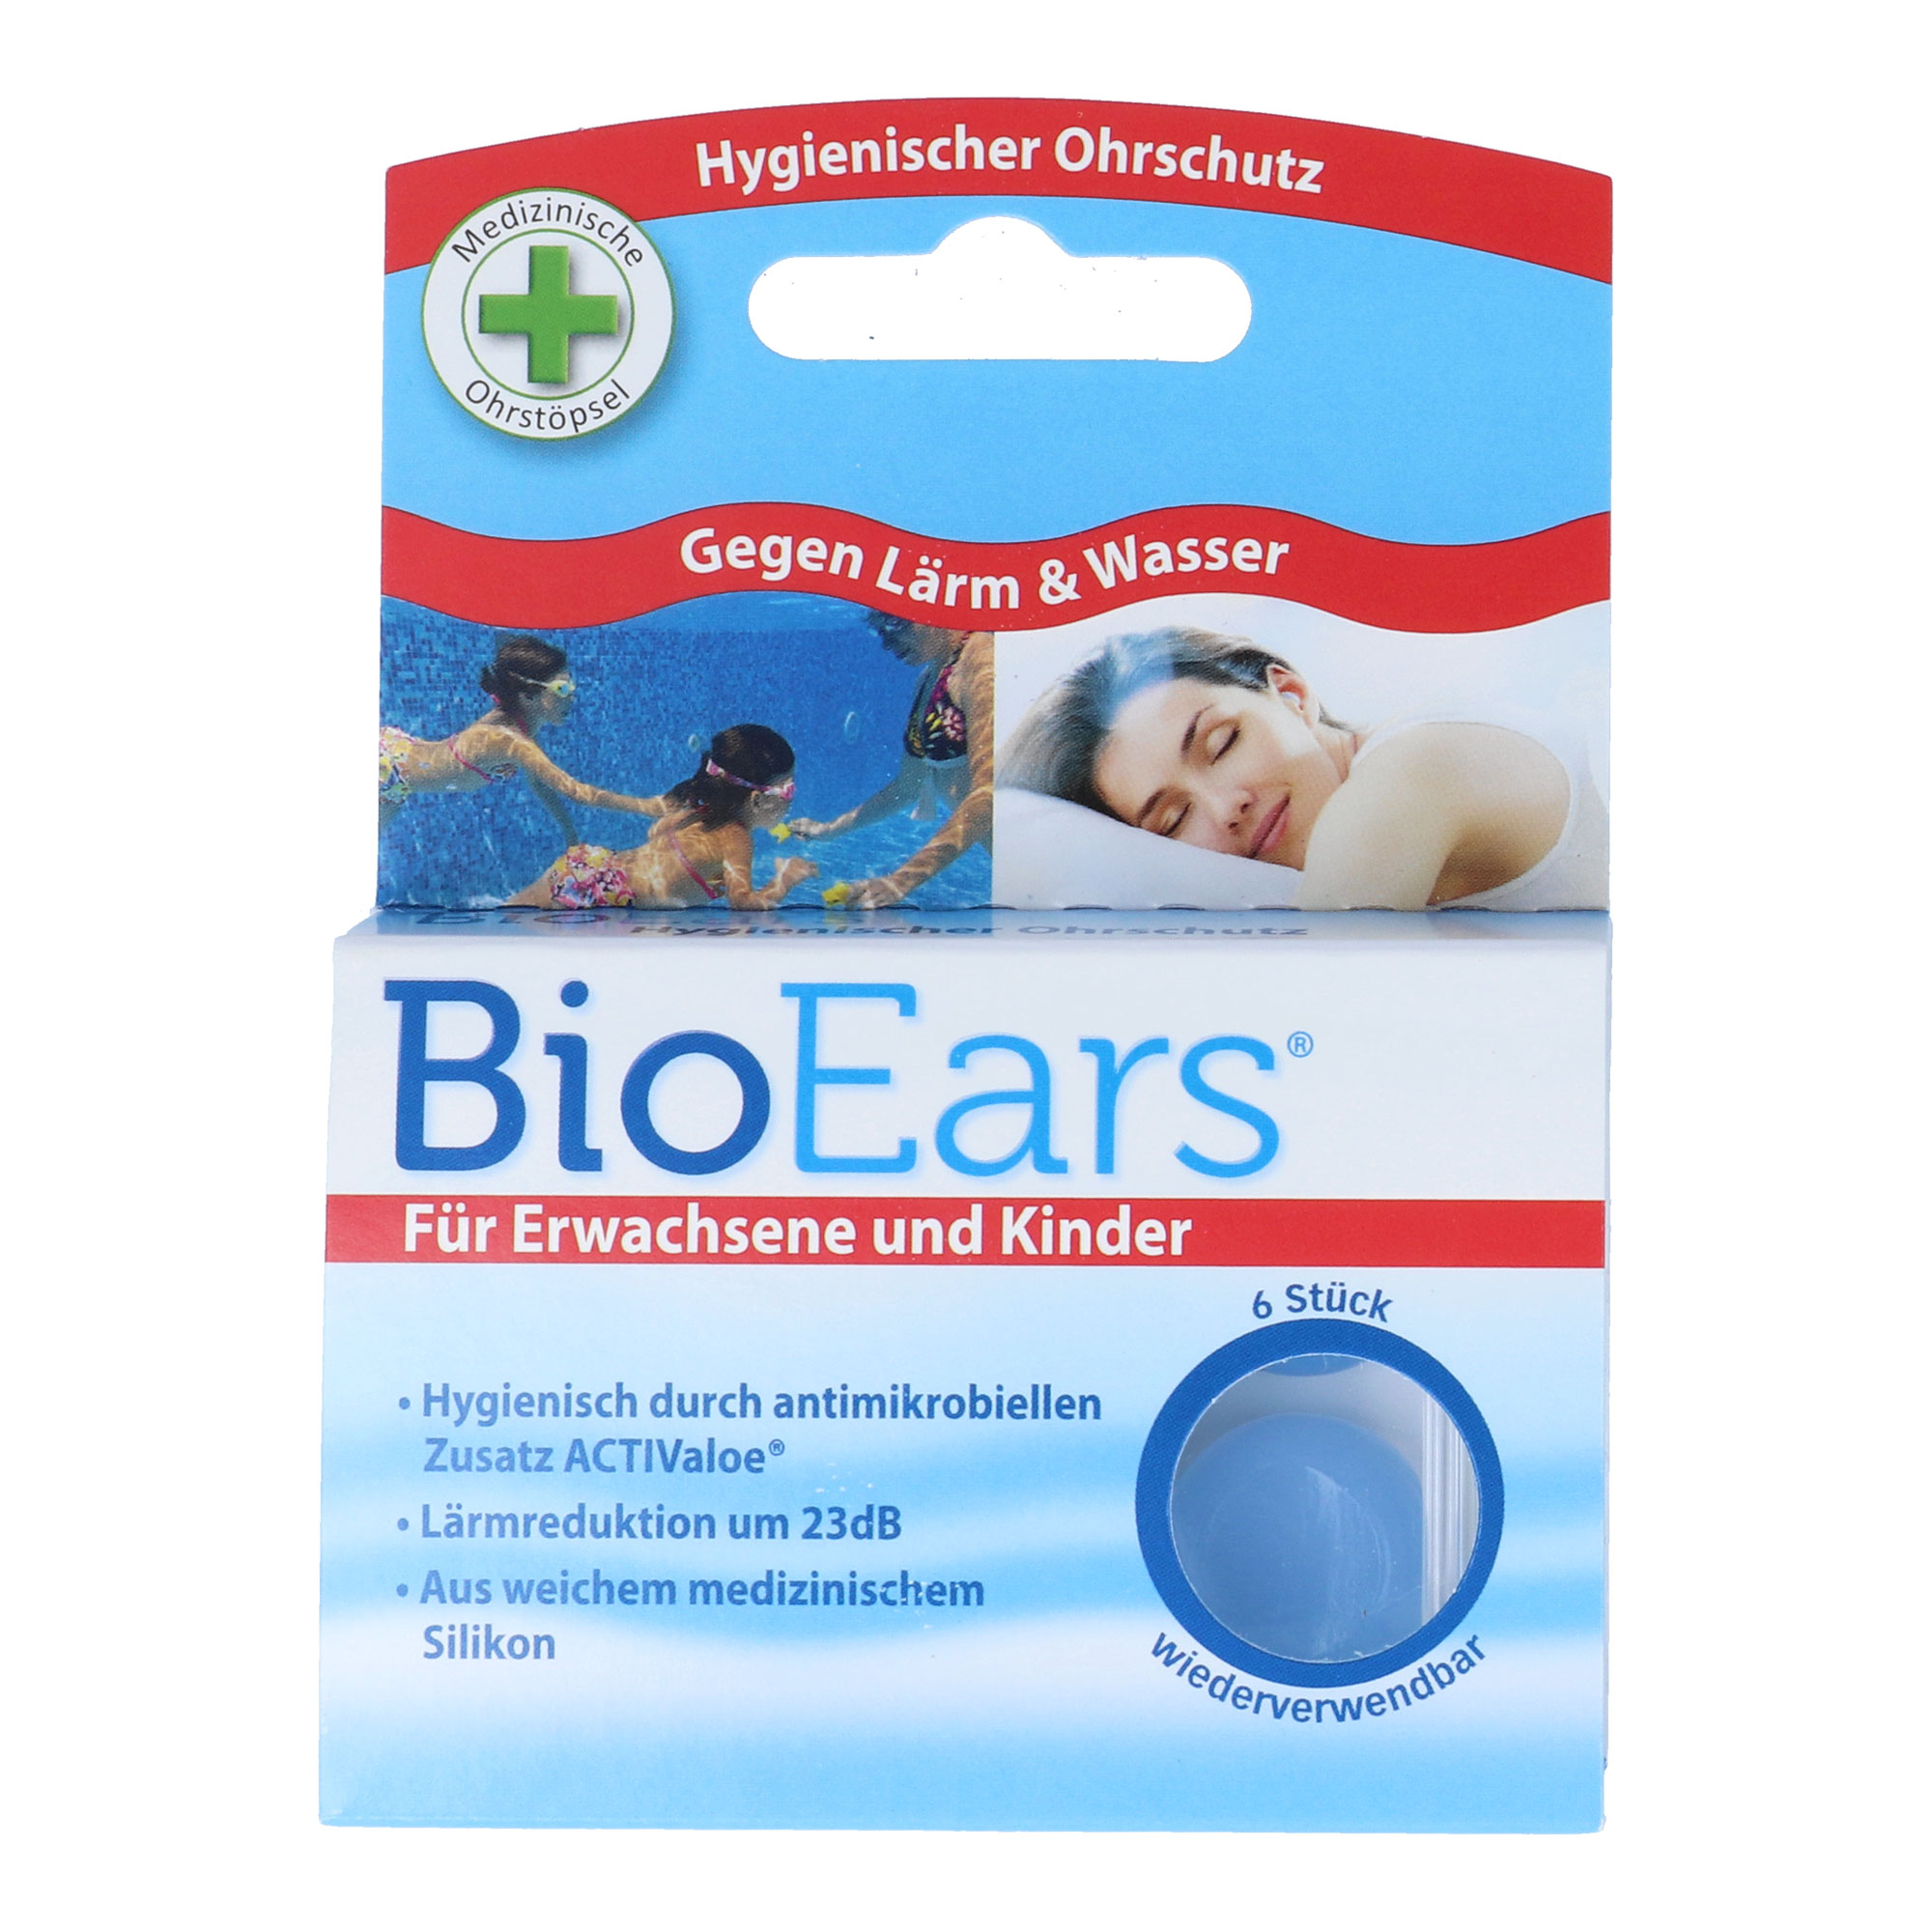 Hygienischer Ohrschutz gegen Wasser. Aus weichem medizinischem Silikon.